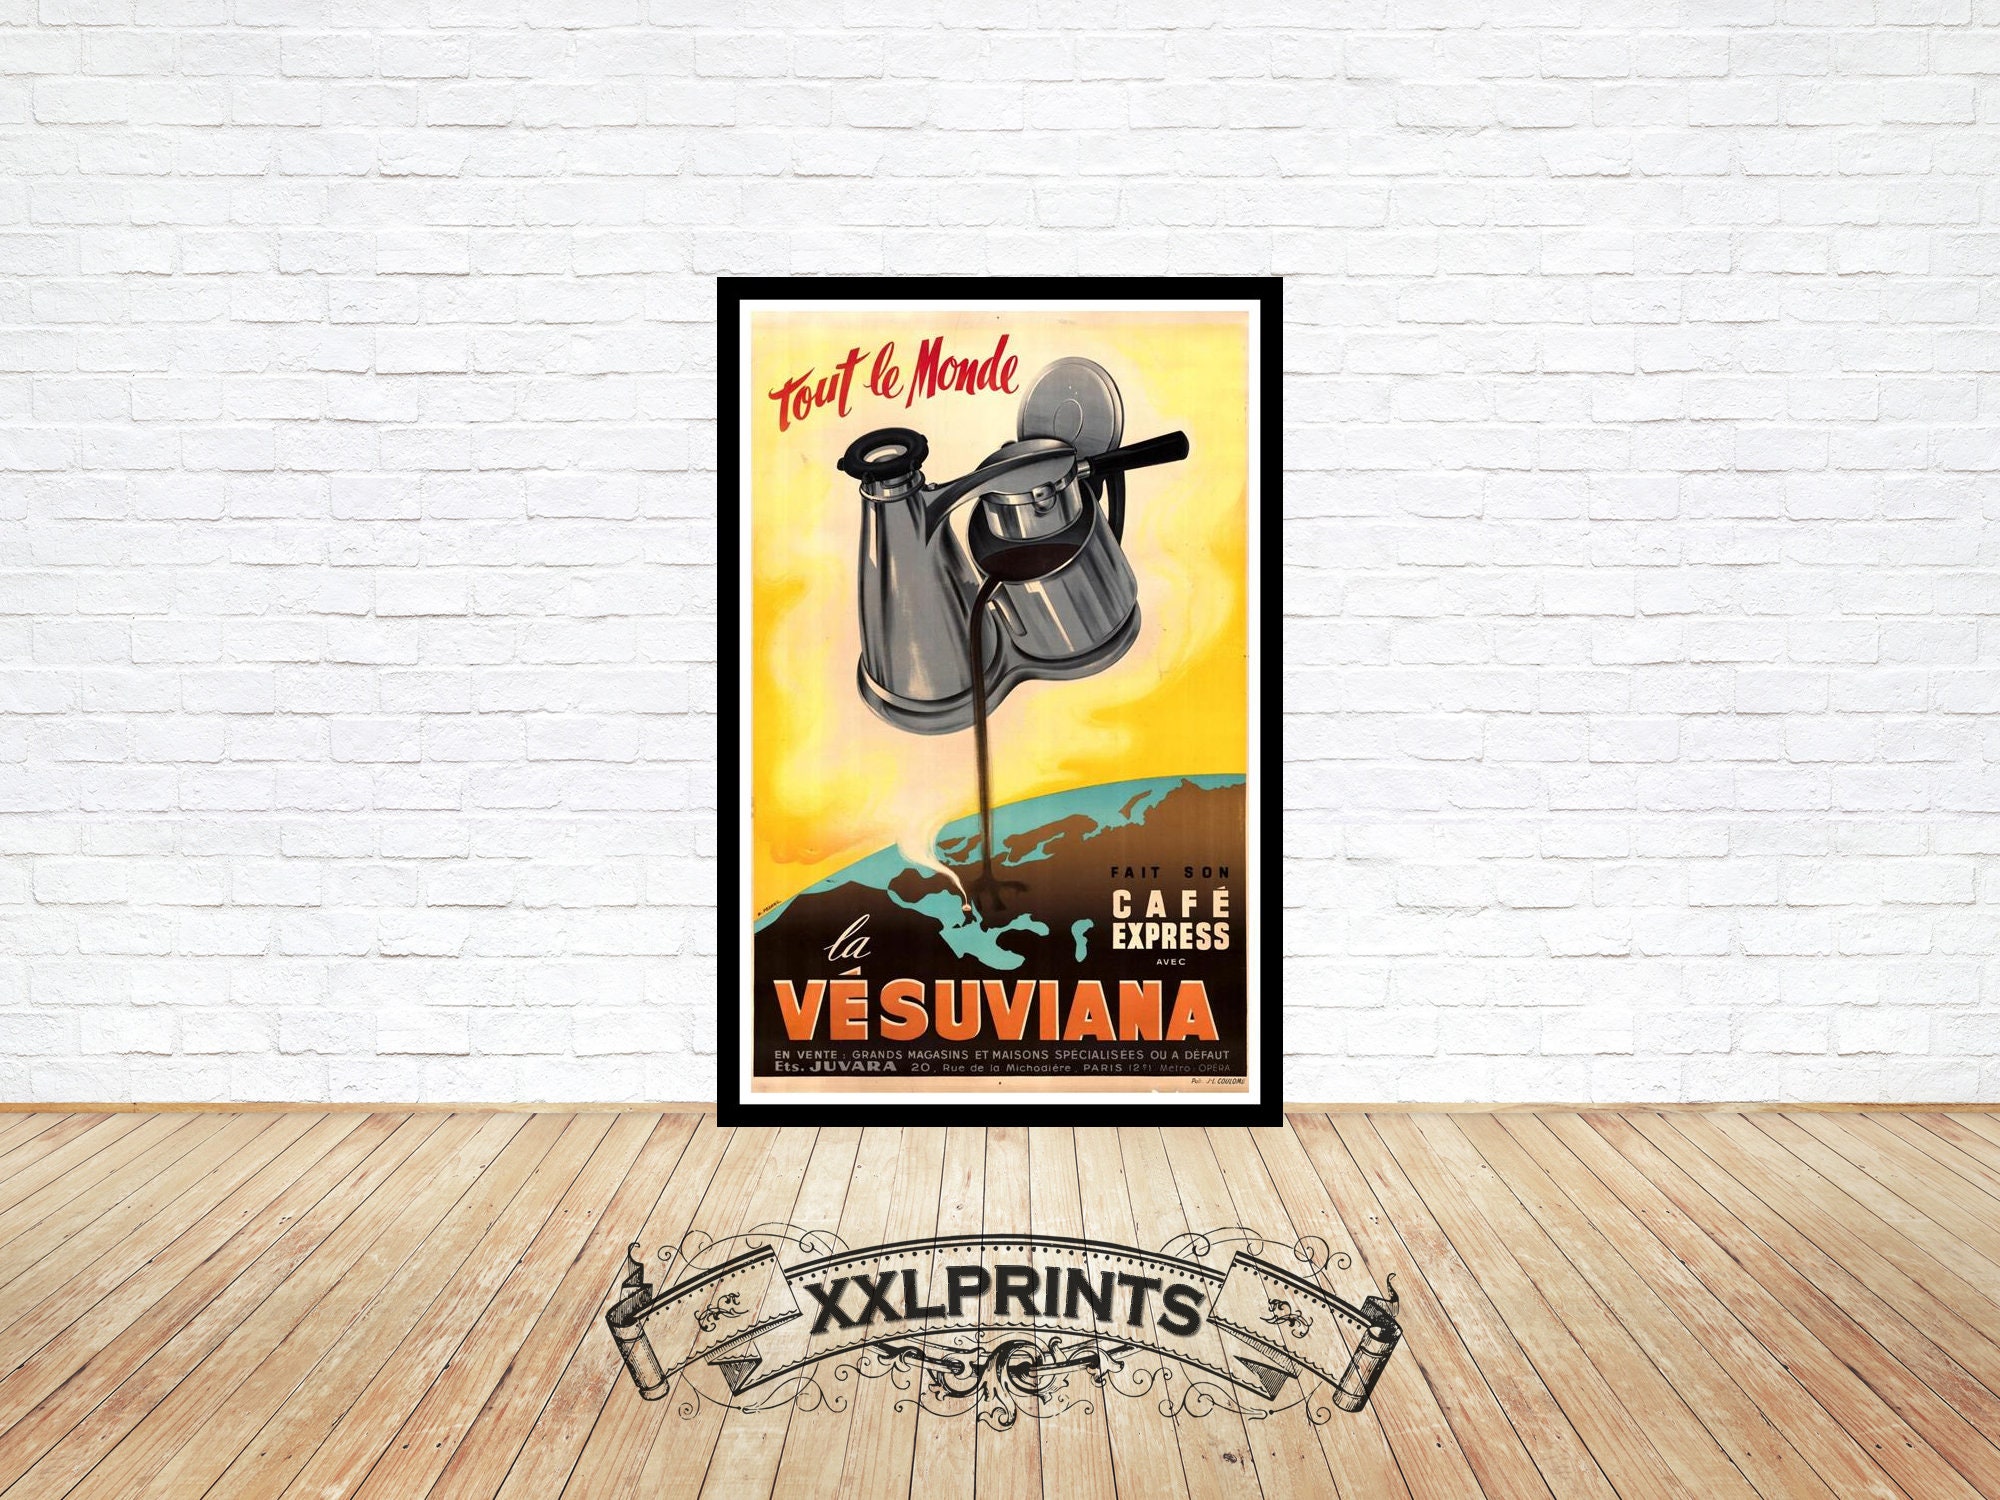 Vesuviana Espresso Maker 3 Piece Seal Set - ALL Sizes